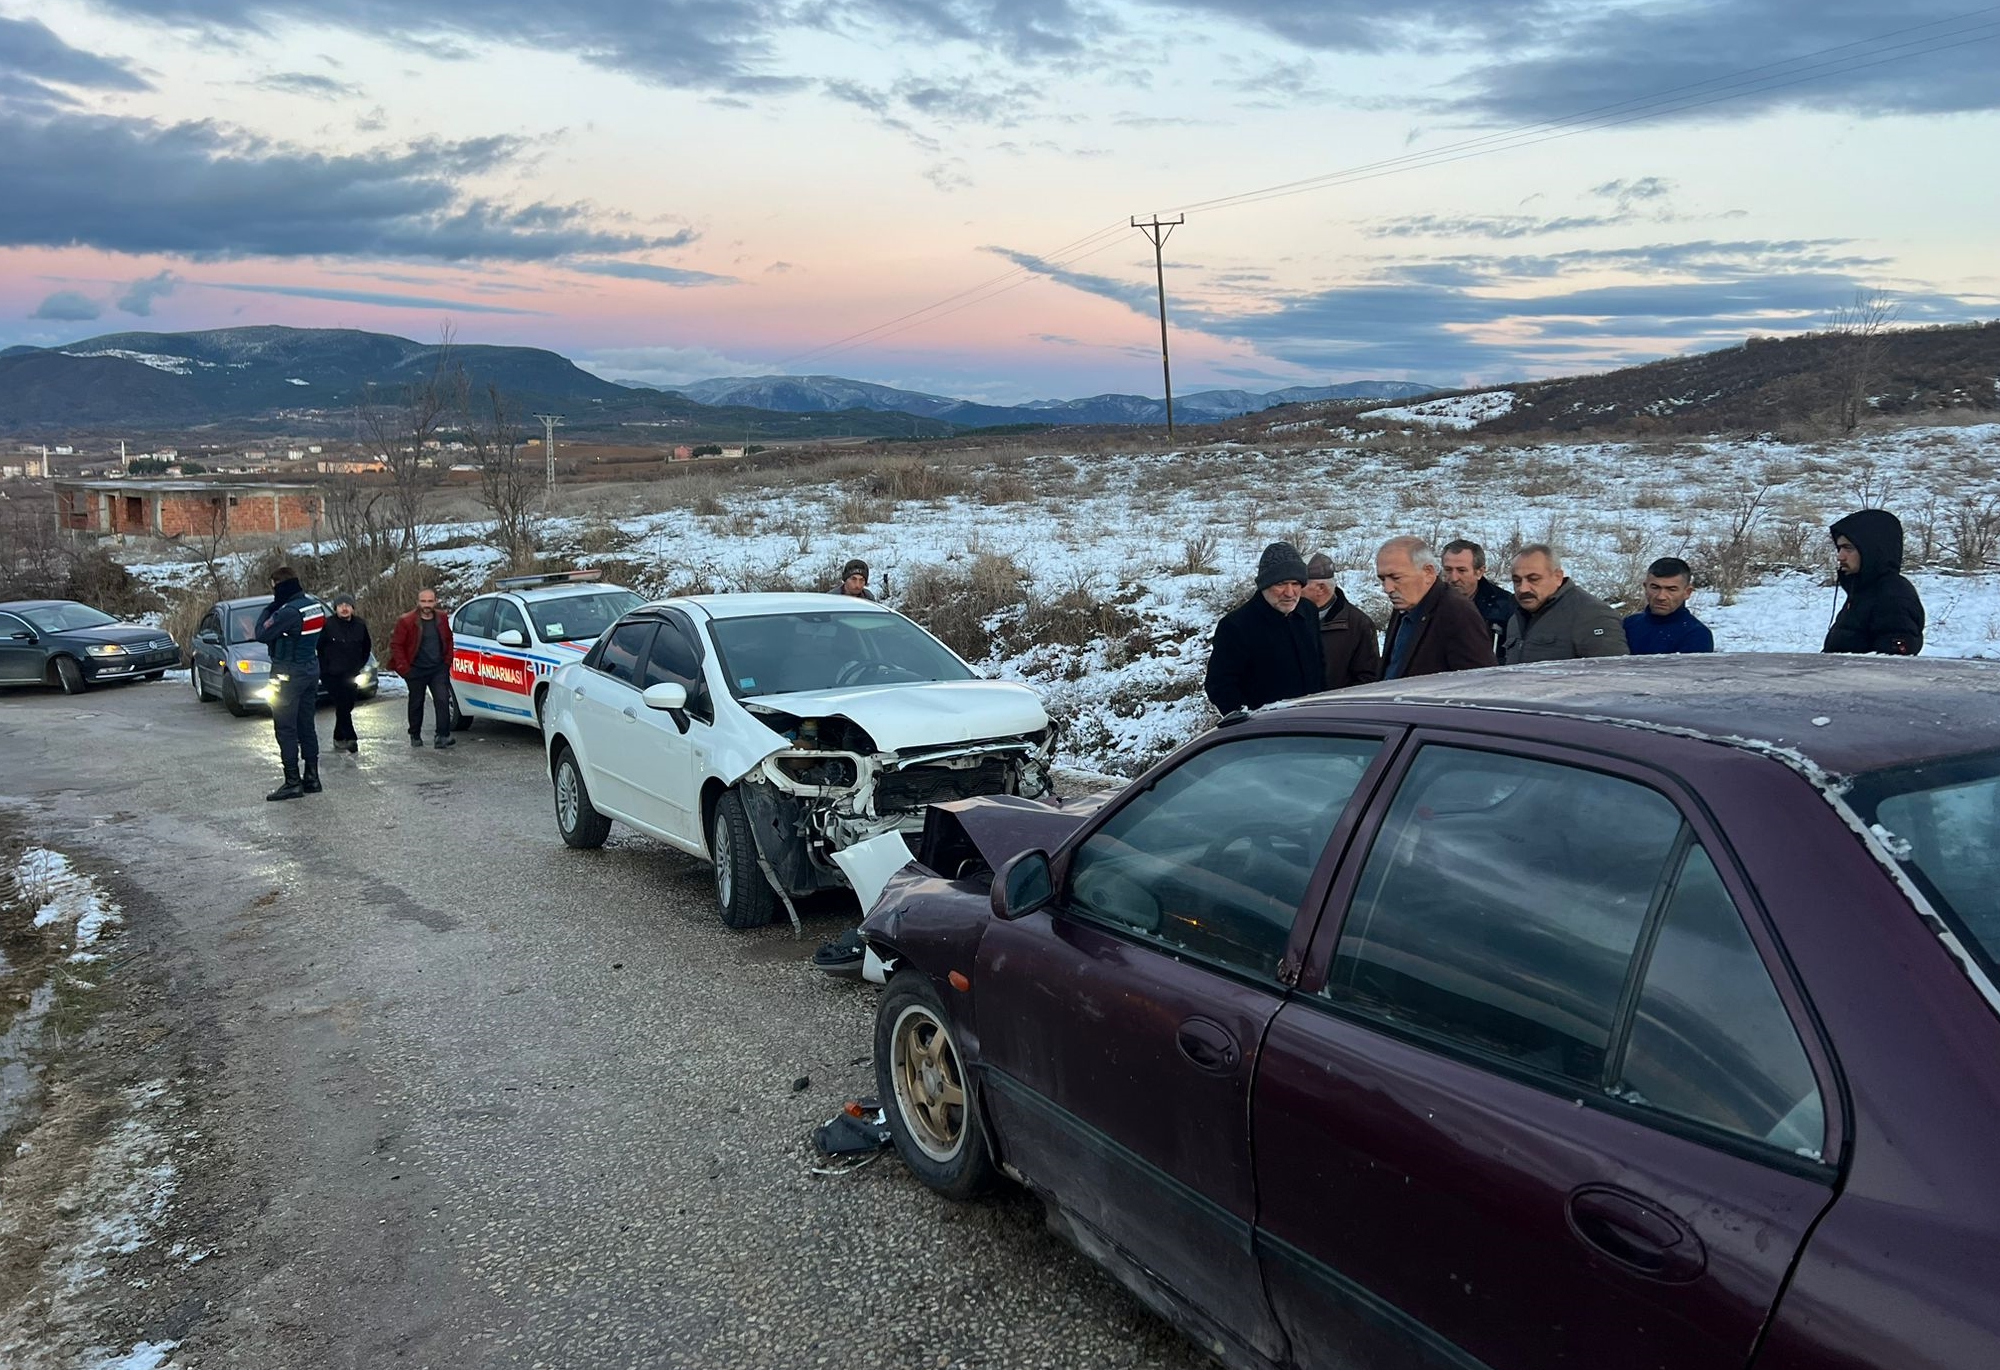 Sinop’ta iki otomobilin çarpıştığı kazada 9 kişi yaralandı